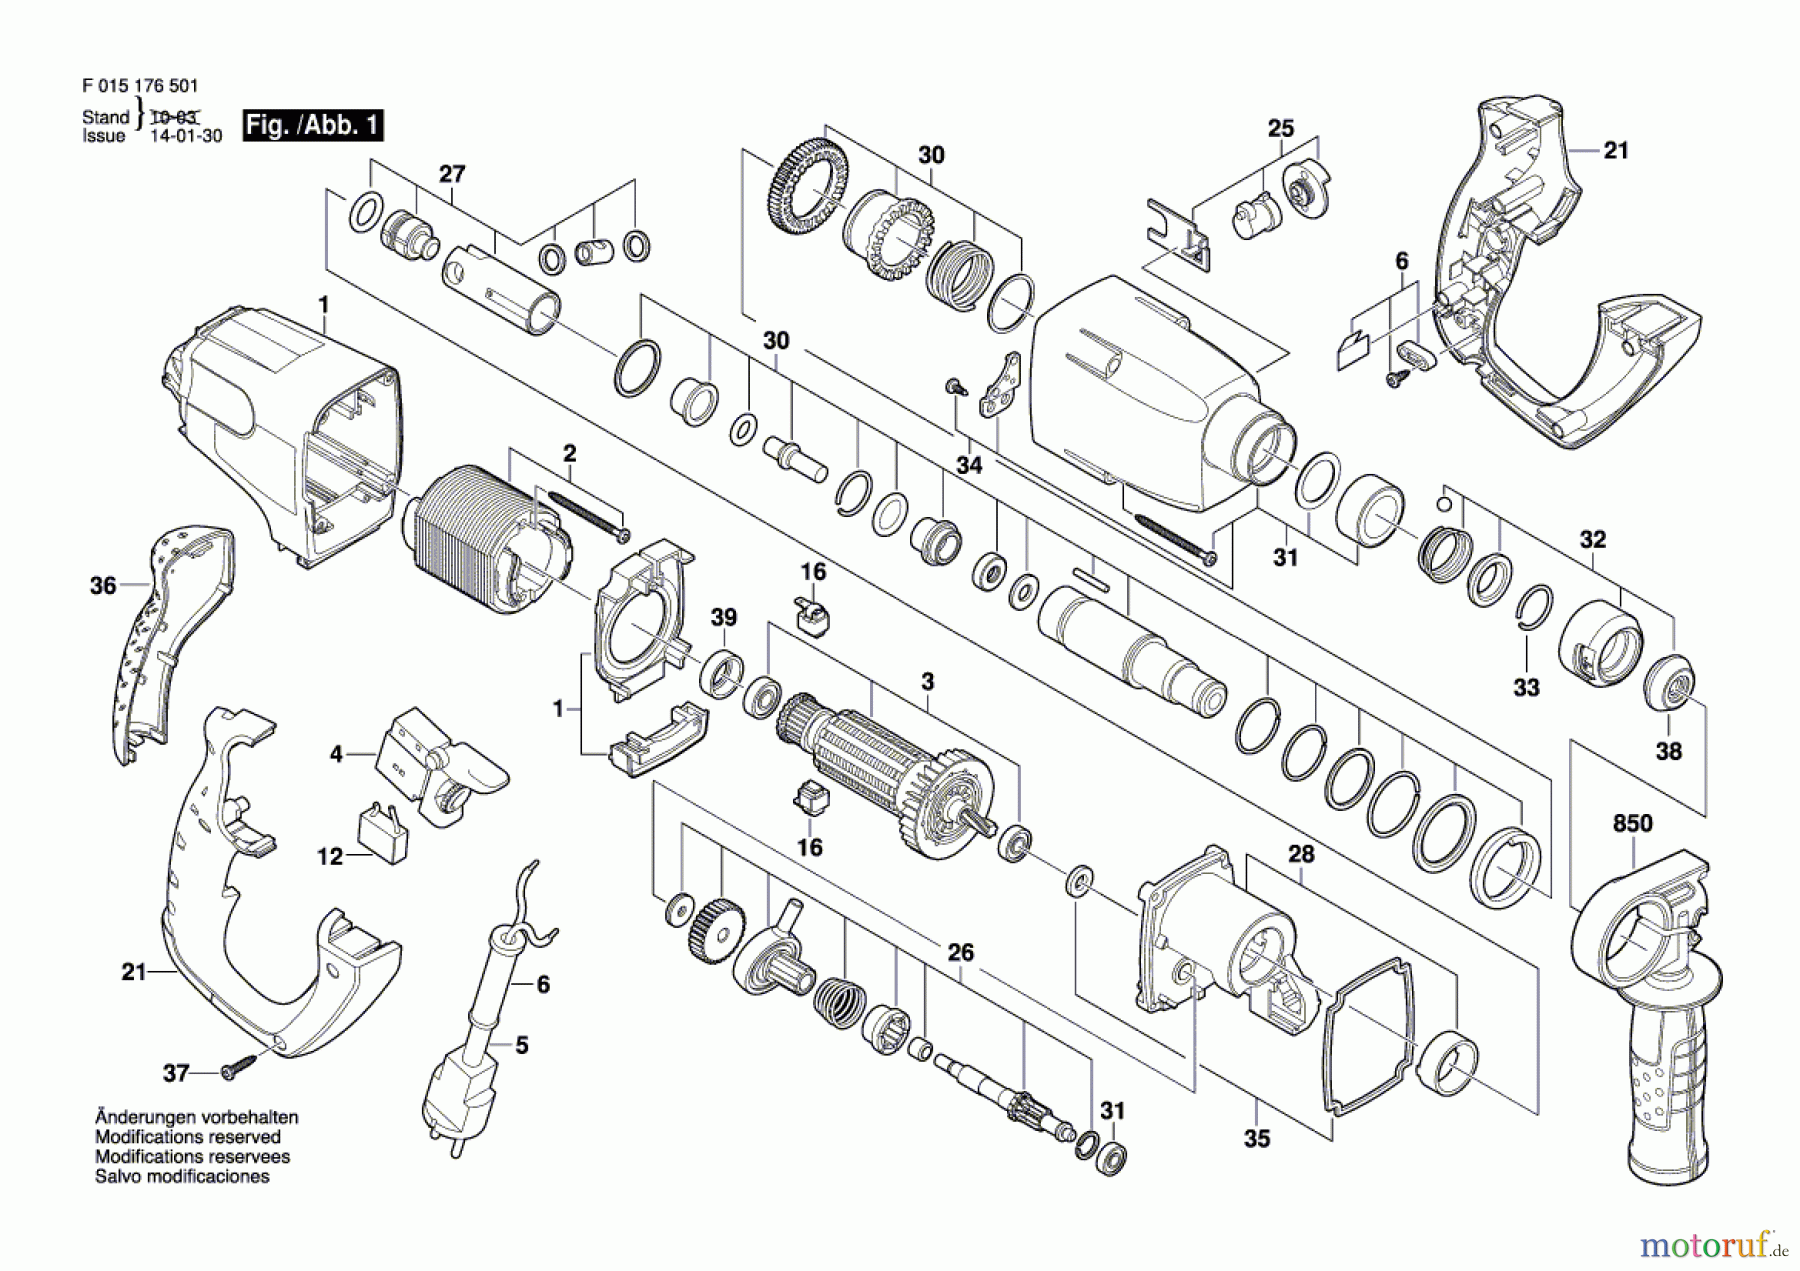  Bosch Werkzeug Bohrhammer 1765 Seite 1